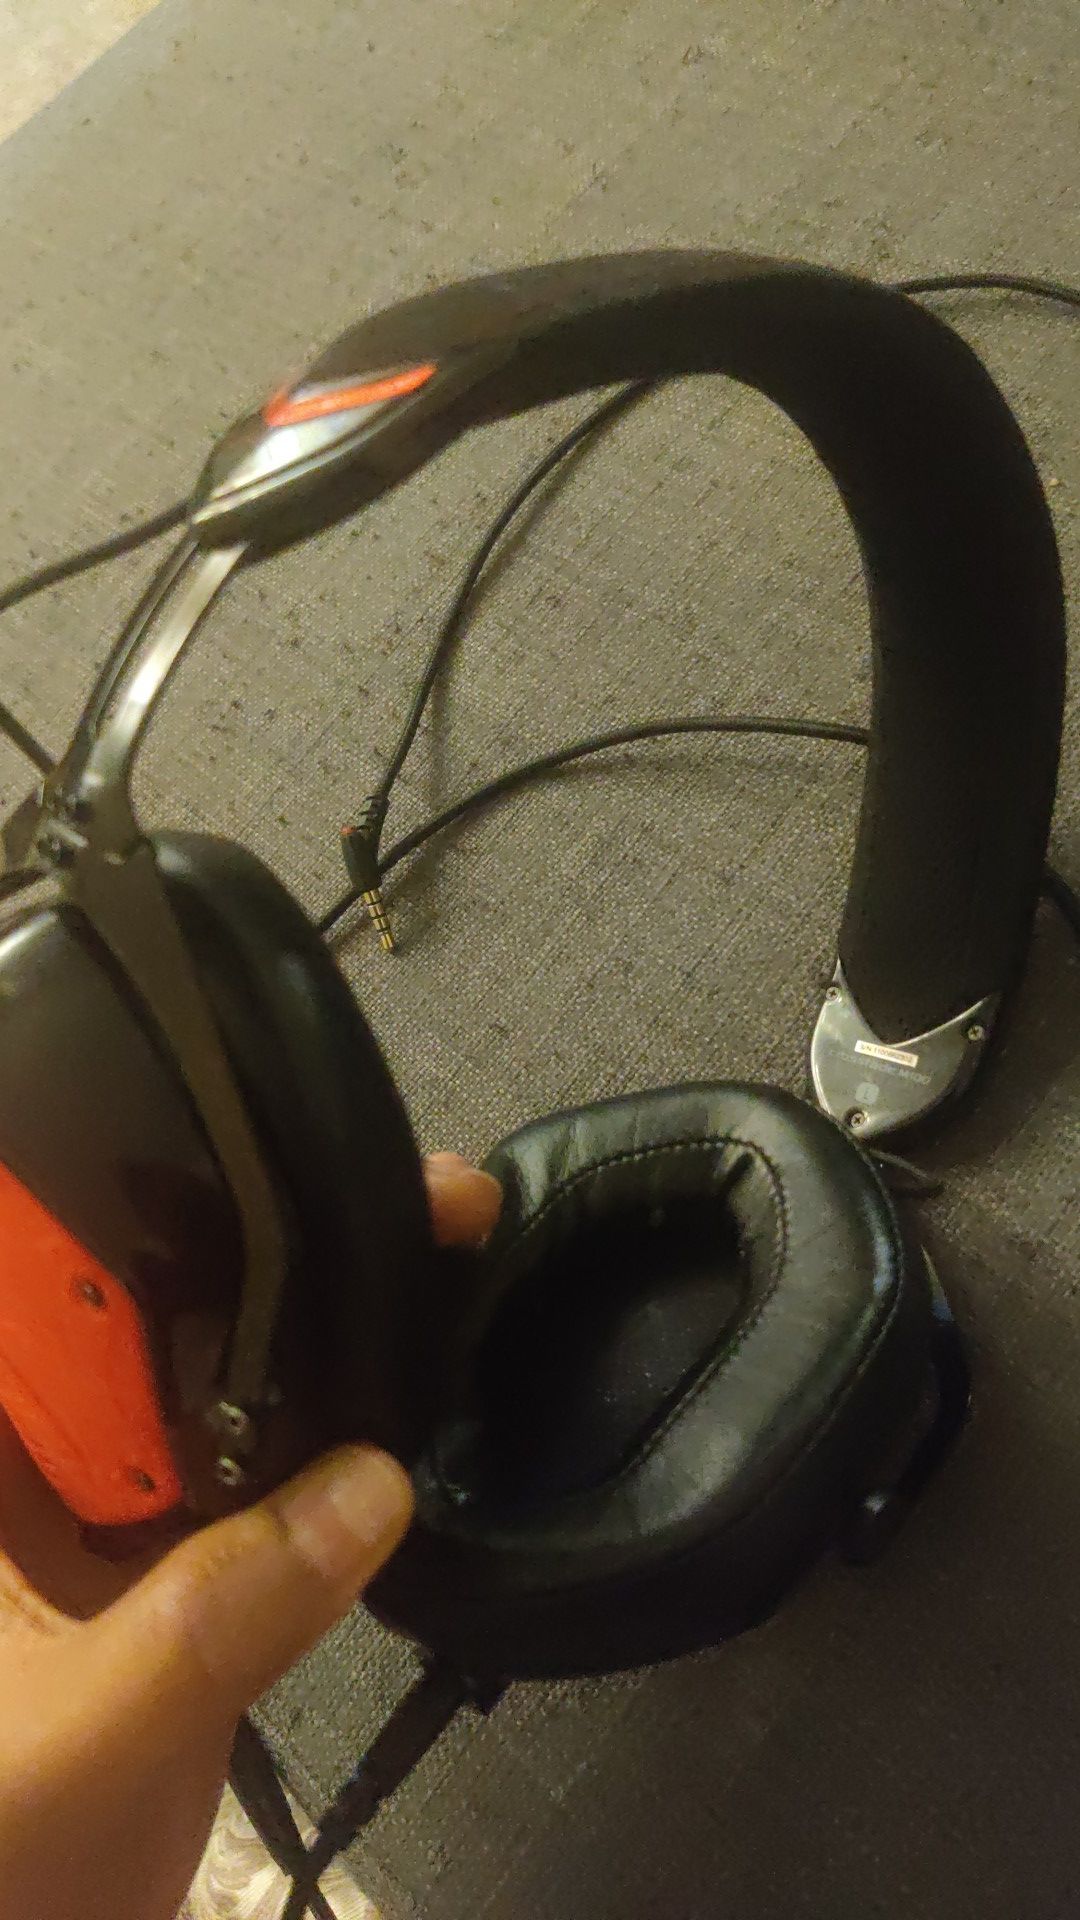 V-moda Crossfade M-100 Master Over-Ear Headphone